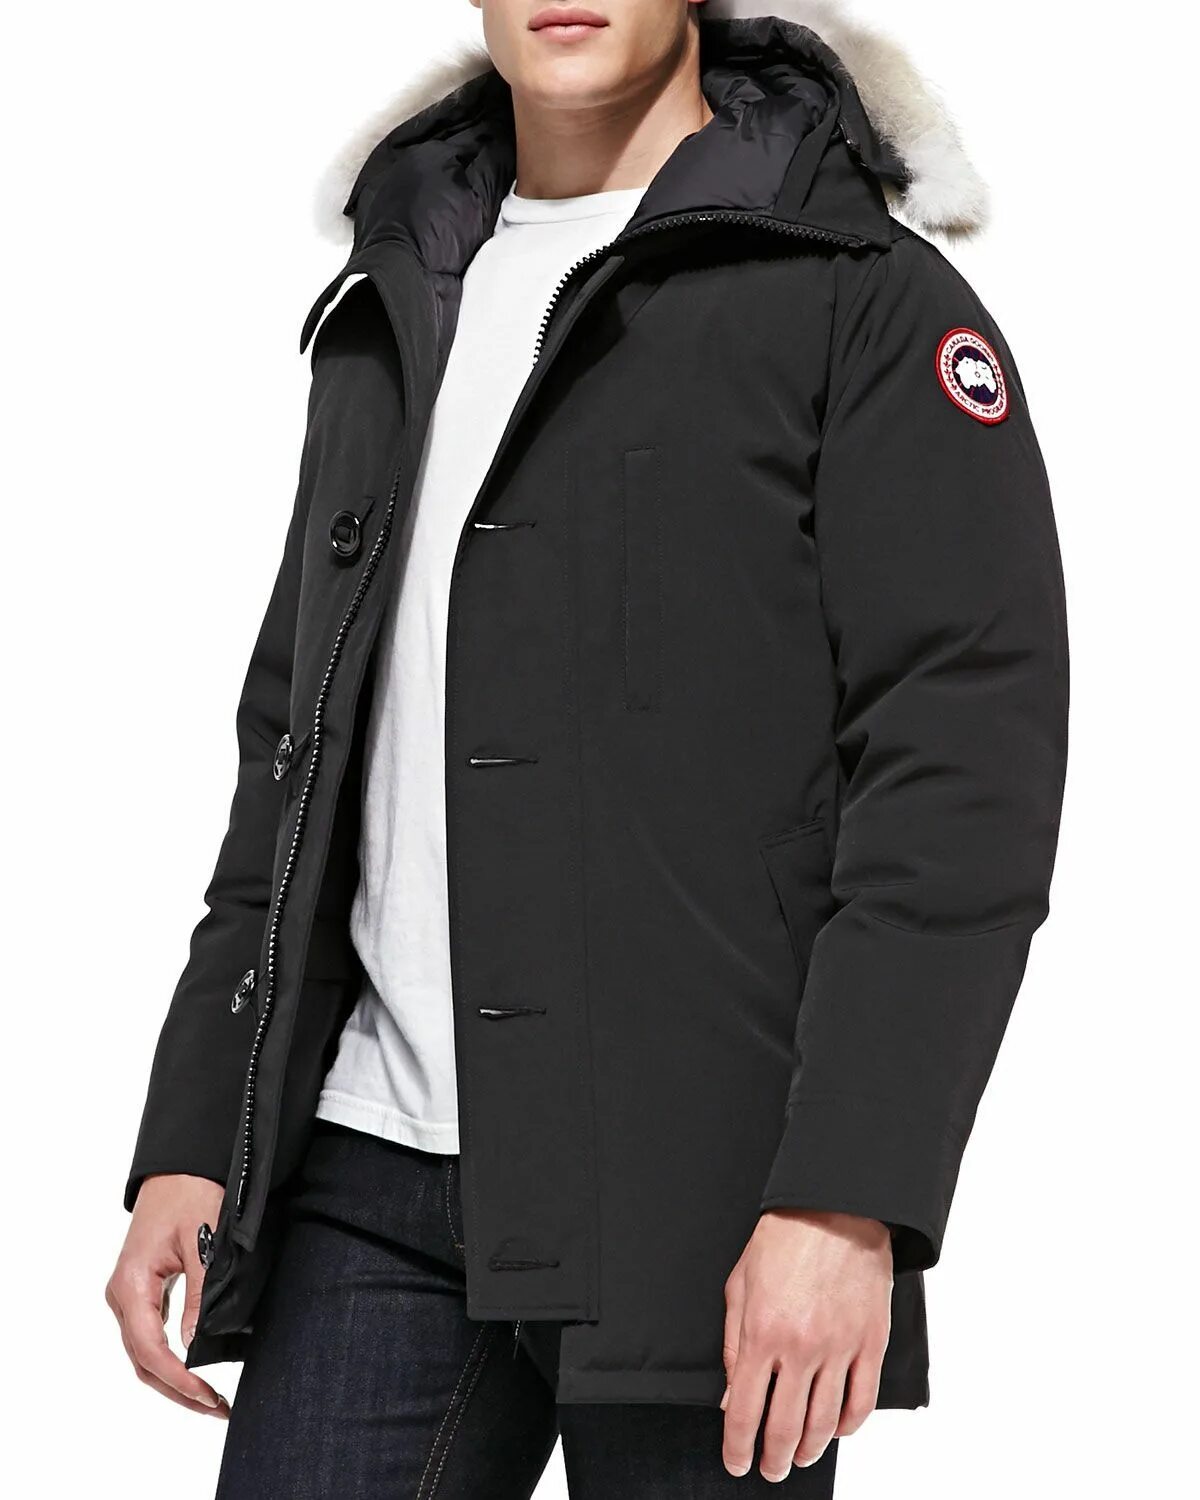 Canada Goose Arctic program куртка мужская. Куртка Canada Goose 3555 мужская зимняя. Canada Goose 9617l. Куртка Канада Гус. Канадские куртки мужские